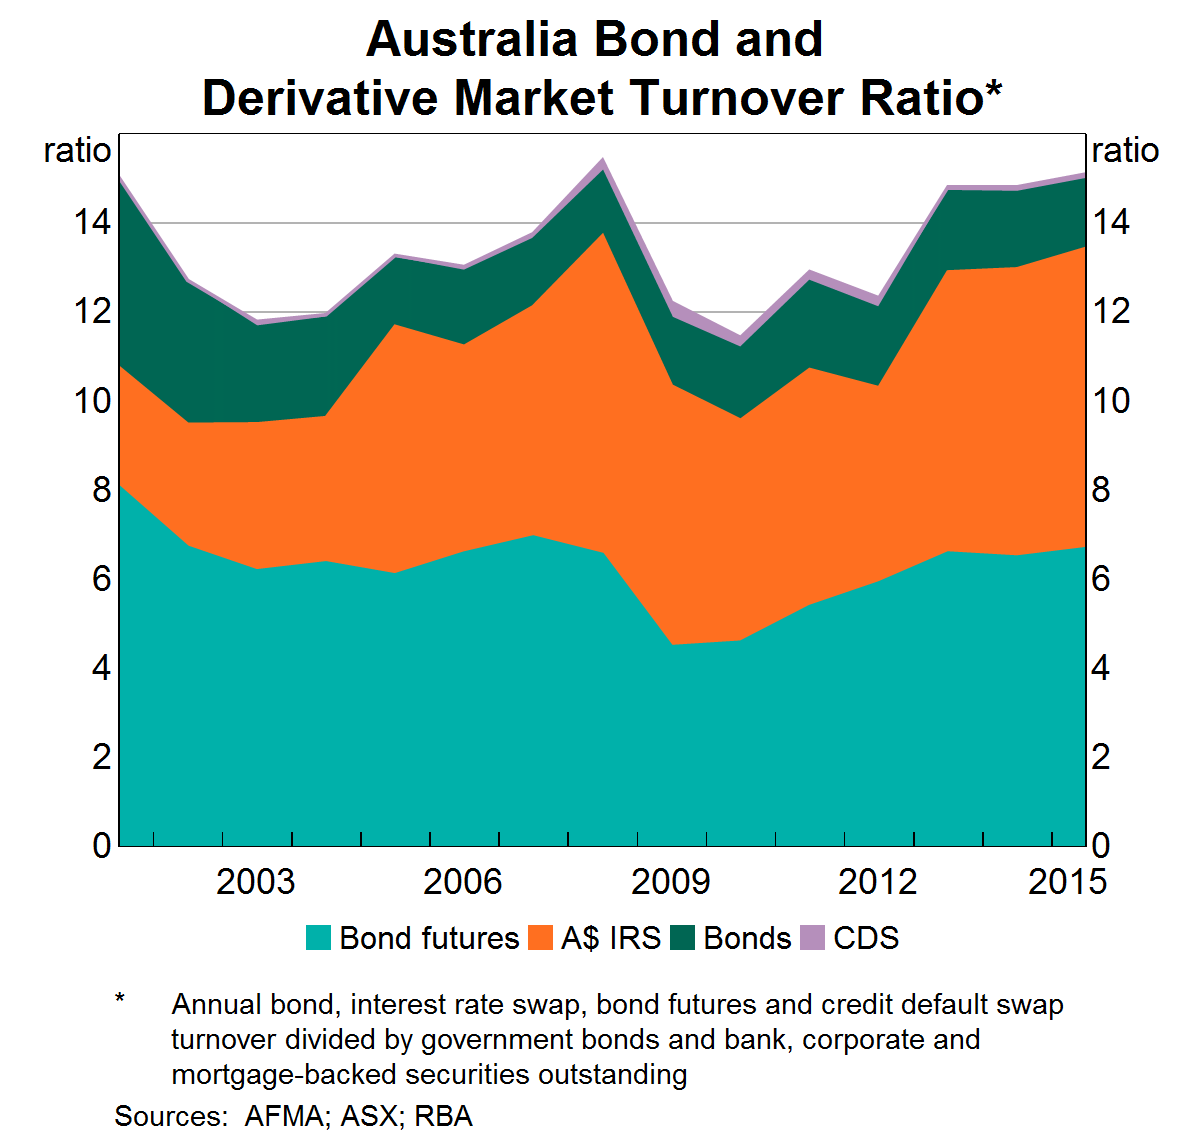 Graph 2: Australia Bond and Derivative Market Turnover Ratio